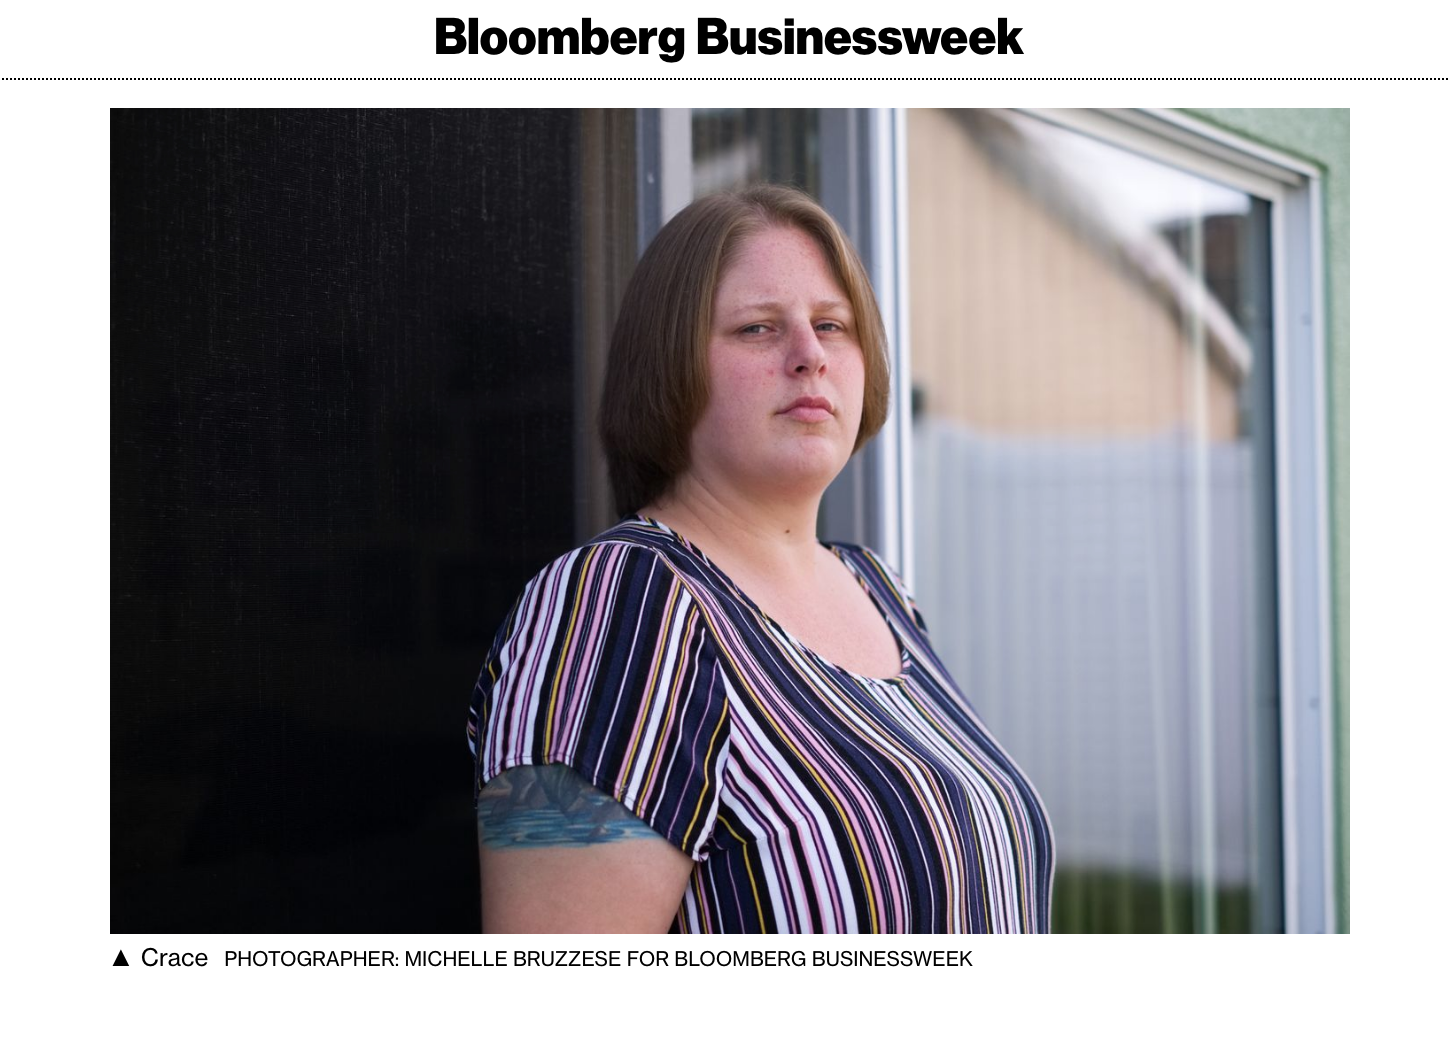  Bloomberg Buisnessweek portrait of Lauren Crace  